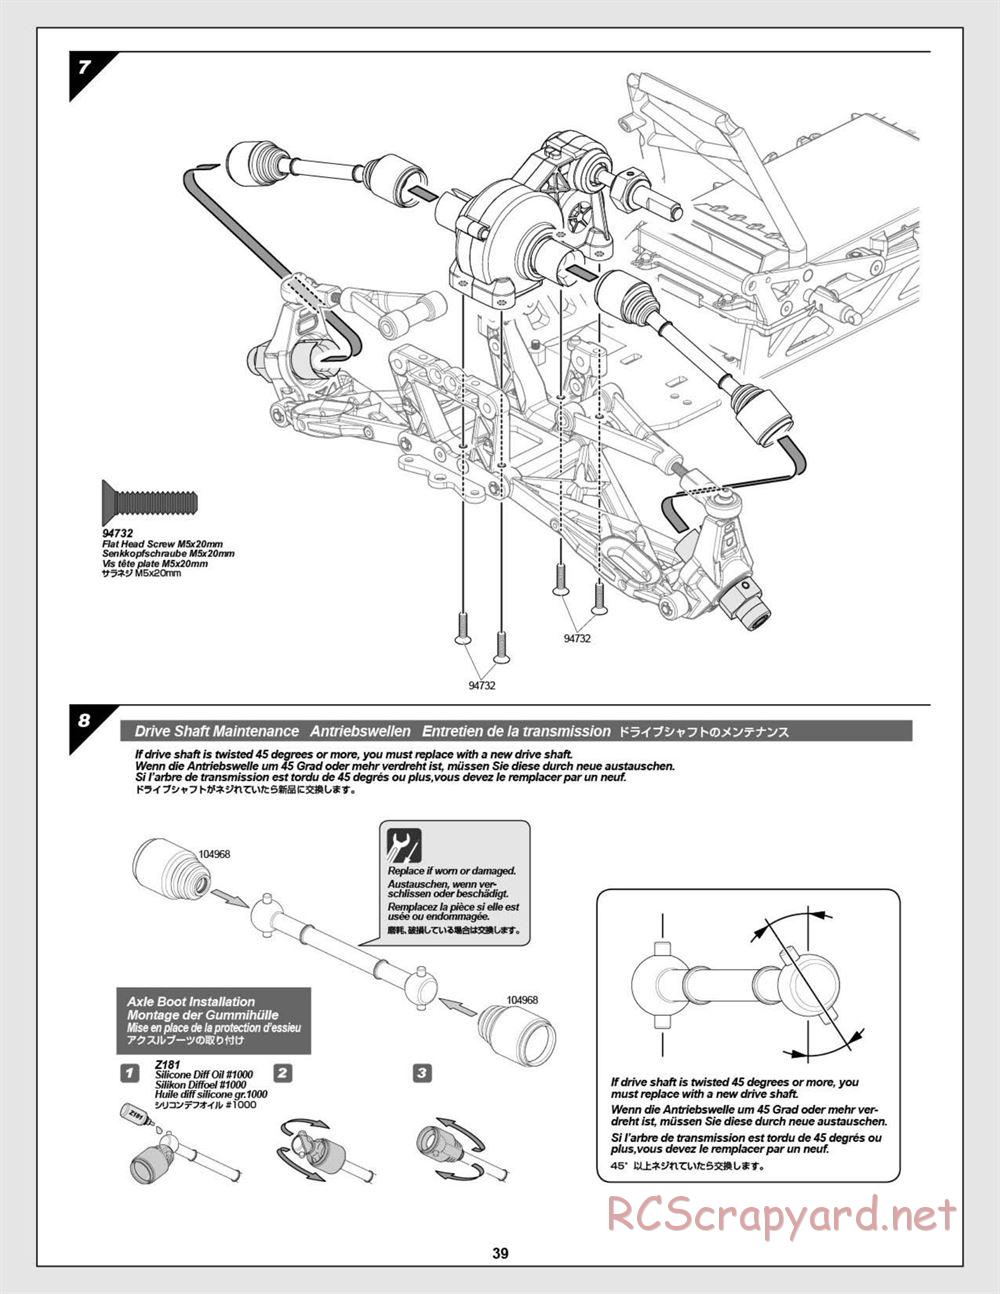 HPI - Baja 5B Flux Buggy - Manual - Page 39